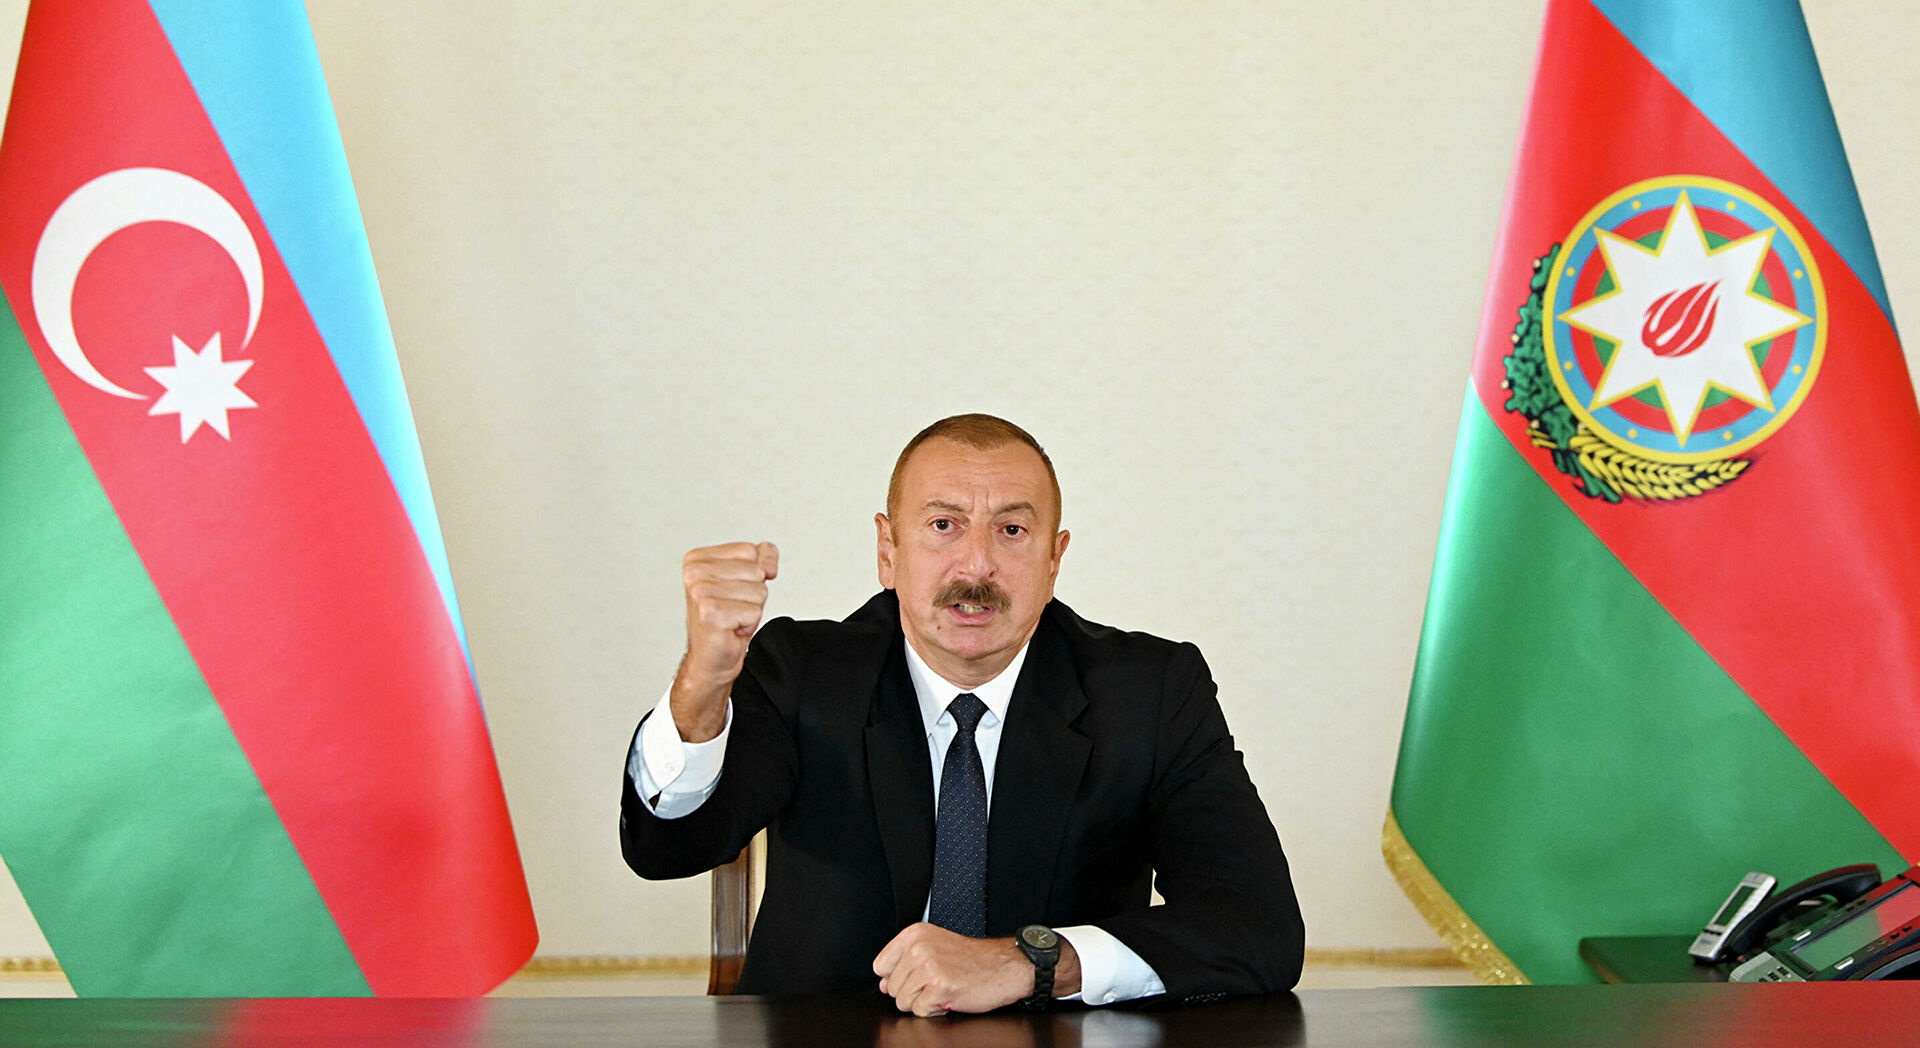 Алиев сообщил о взятии еще одного города в Карабахе: "Физули наш!"